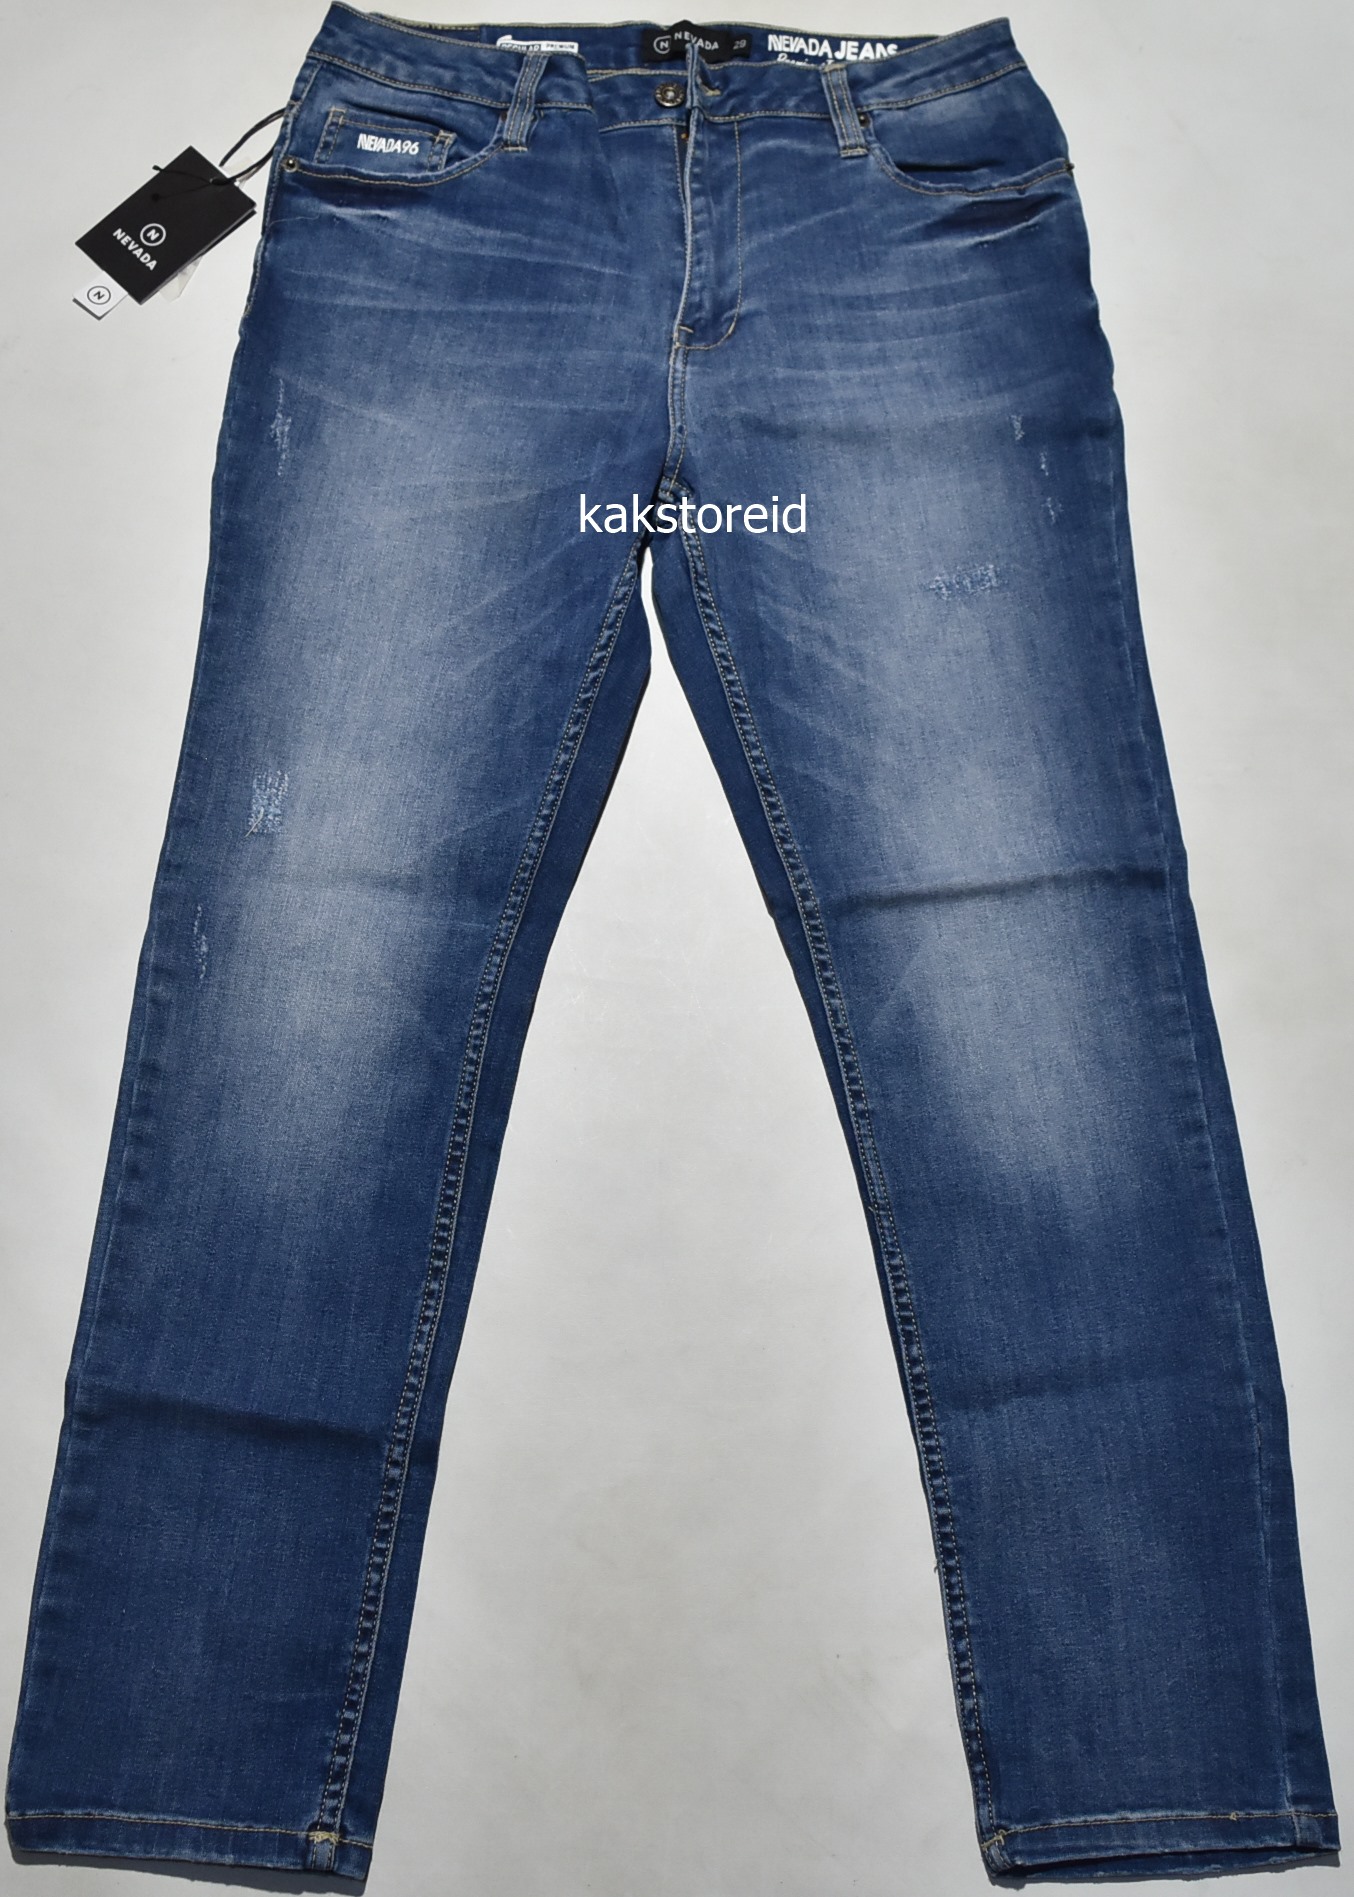 Jual 100% ORIGINAL - GP Universal Jegging Jeans - Women Denim Trousers -  Celana Panjang Wanita